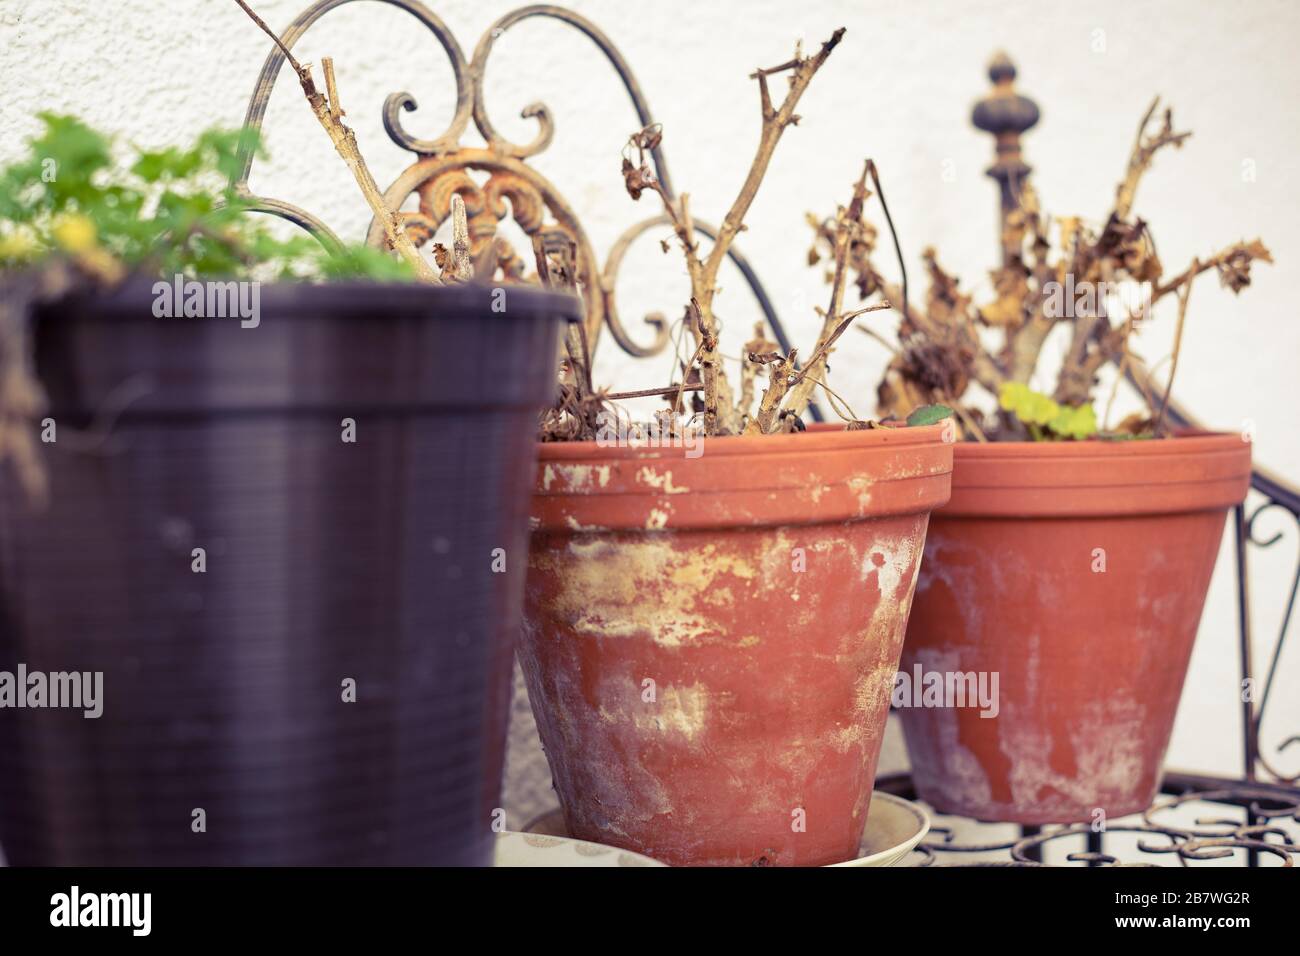 Risvegliare geranio e prezzemolo in vecchi vasi di fiori Foto Stock